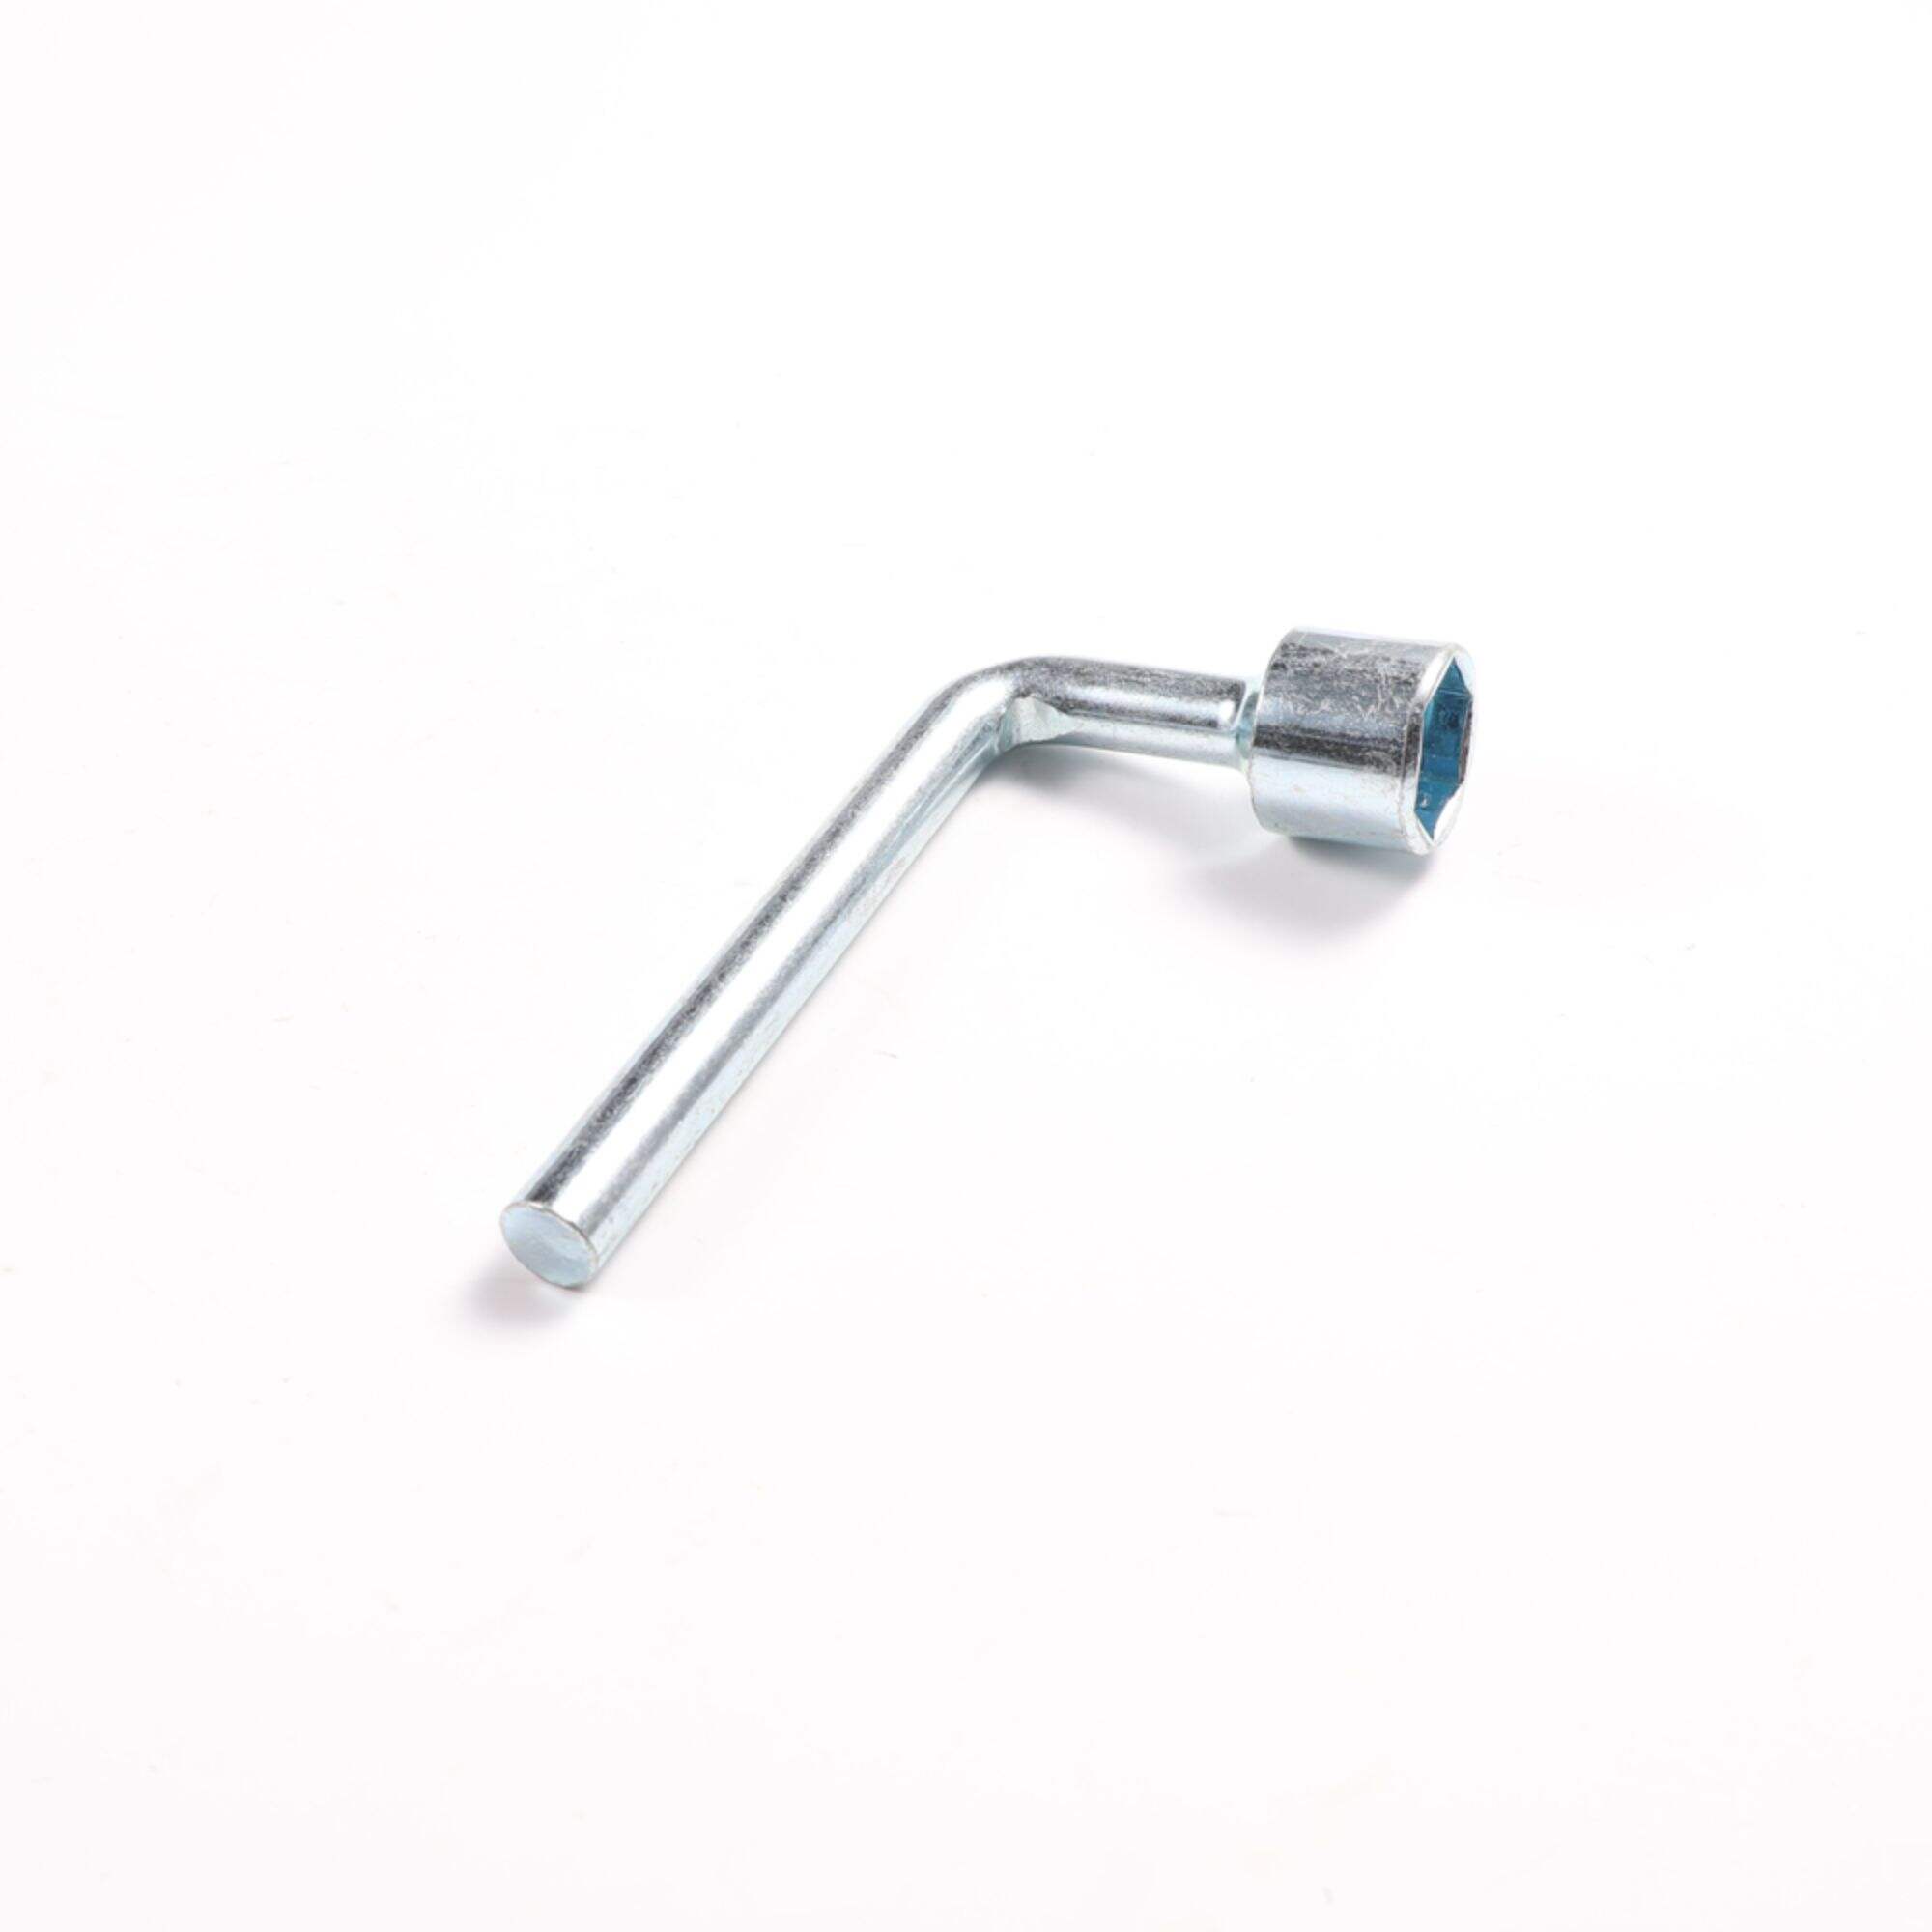 Nickel Carbon Steel 3mm 4mm 5mm 6mm L Type Wrench Hex Key Allen Key